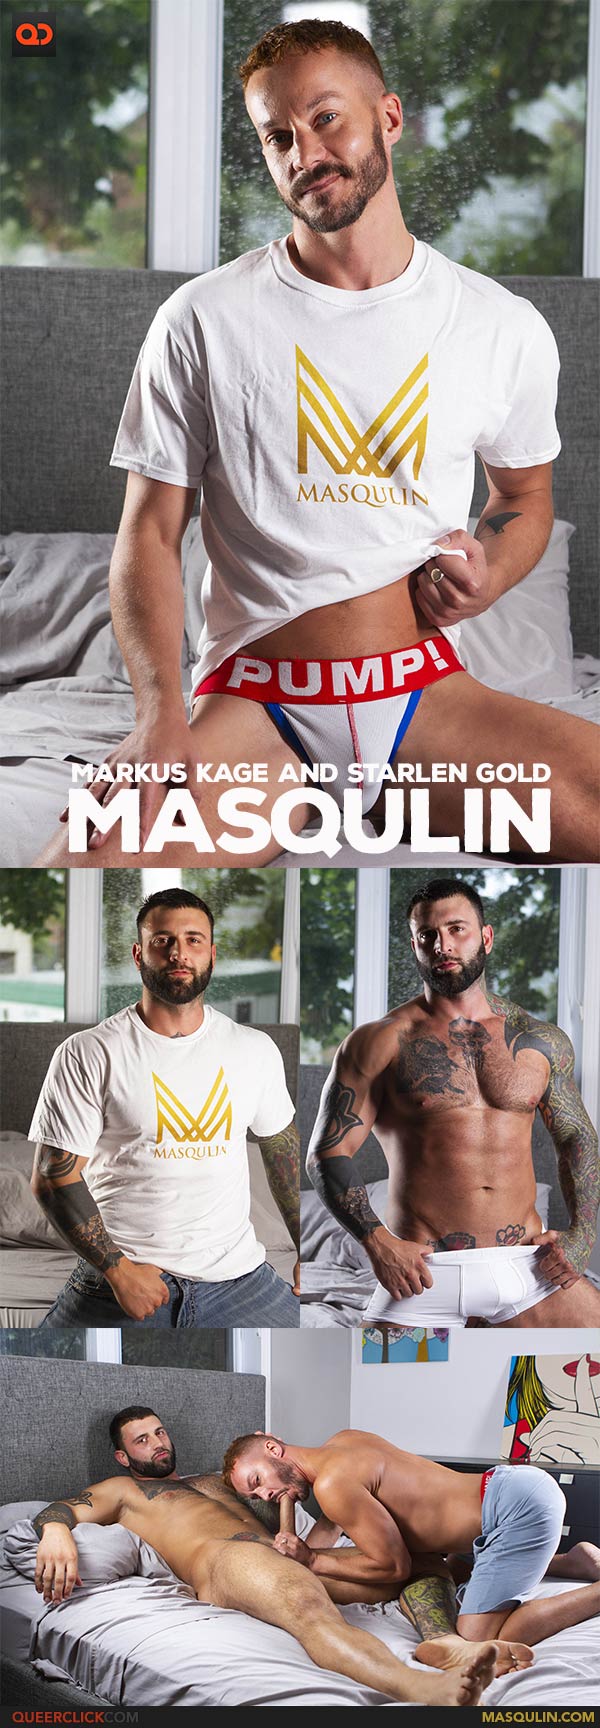 Masqulin: Markus Kage and Starlen Gold